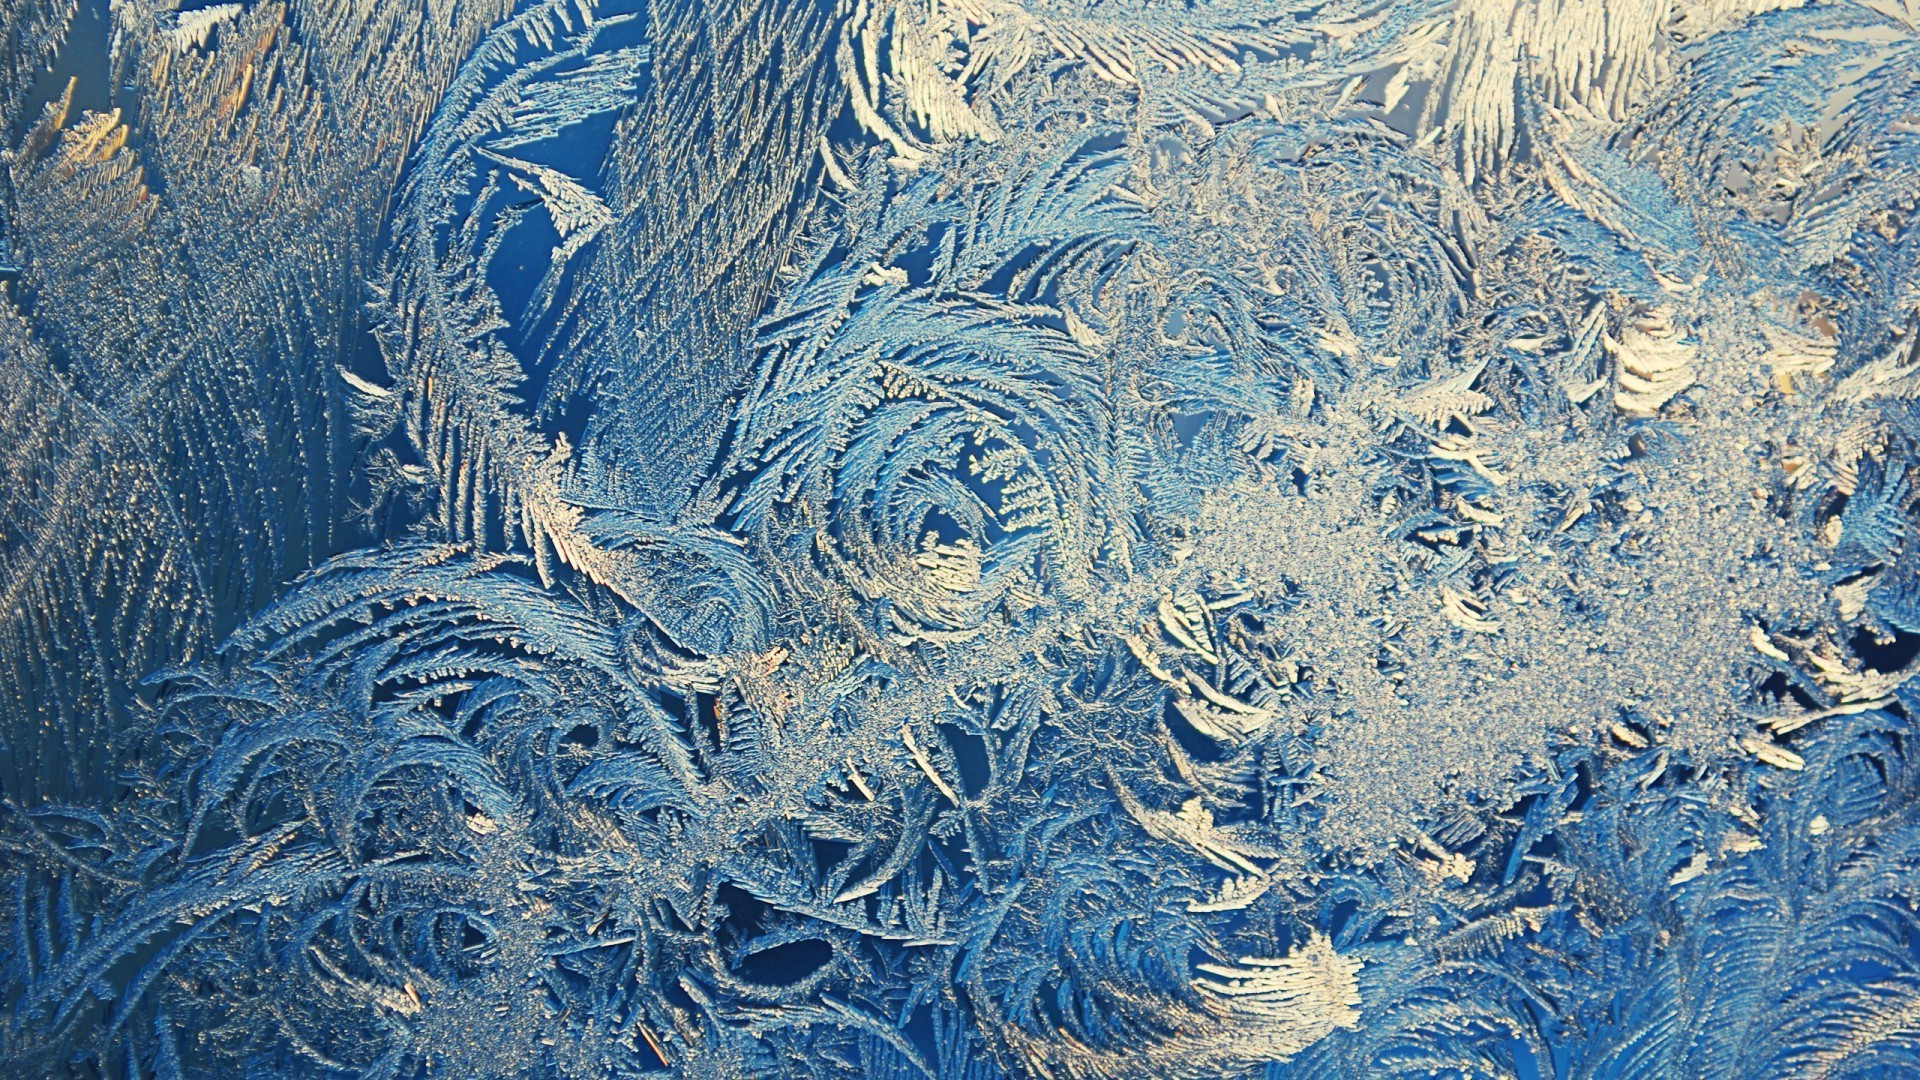 стекло рабочего стола шаблон мороз аннотация текстура холодная ледяной лед морозный природа зима дизайн замороженные снег искусство кристалл обои